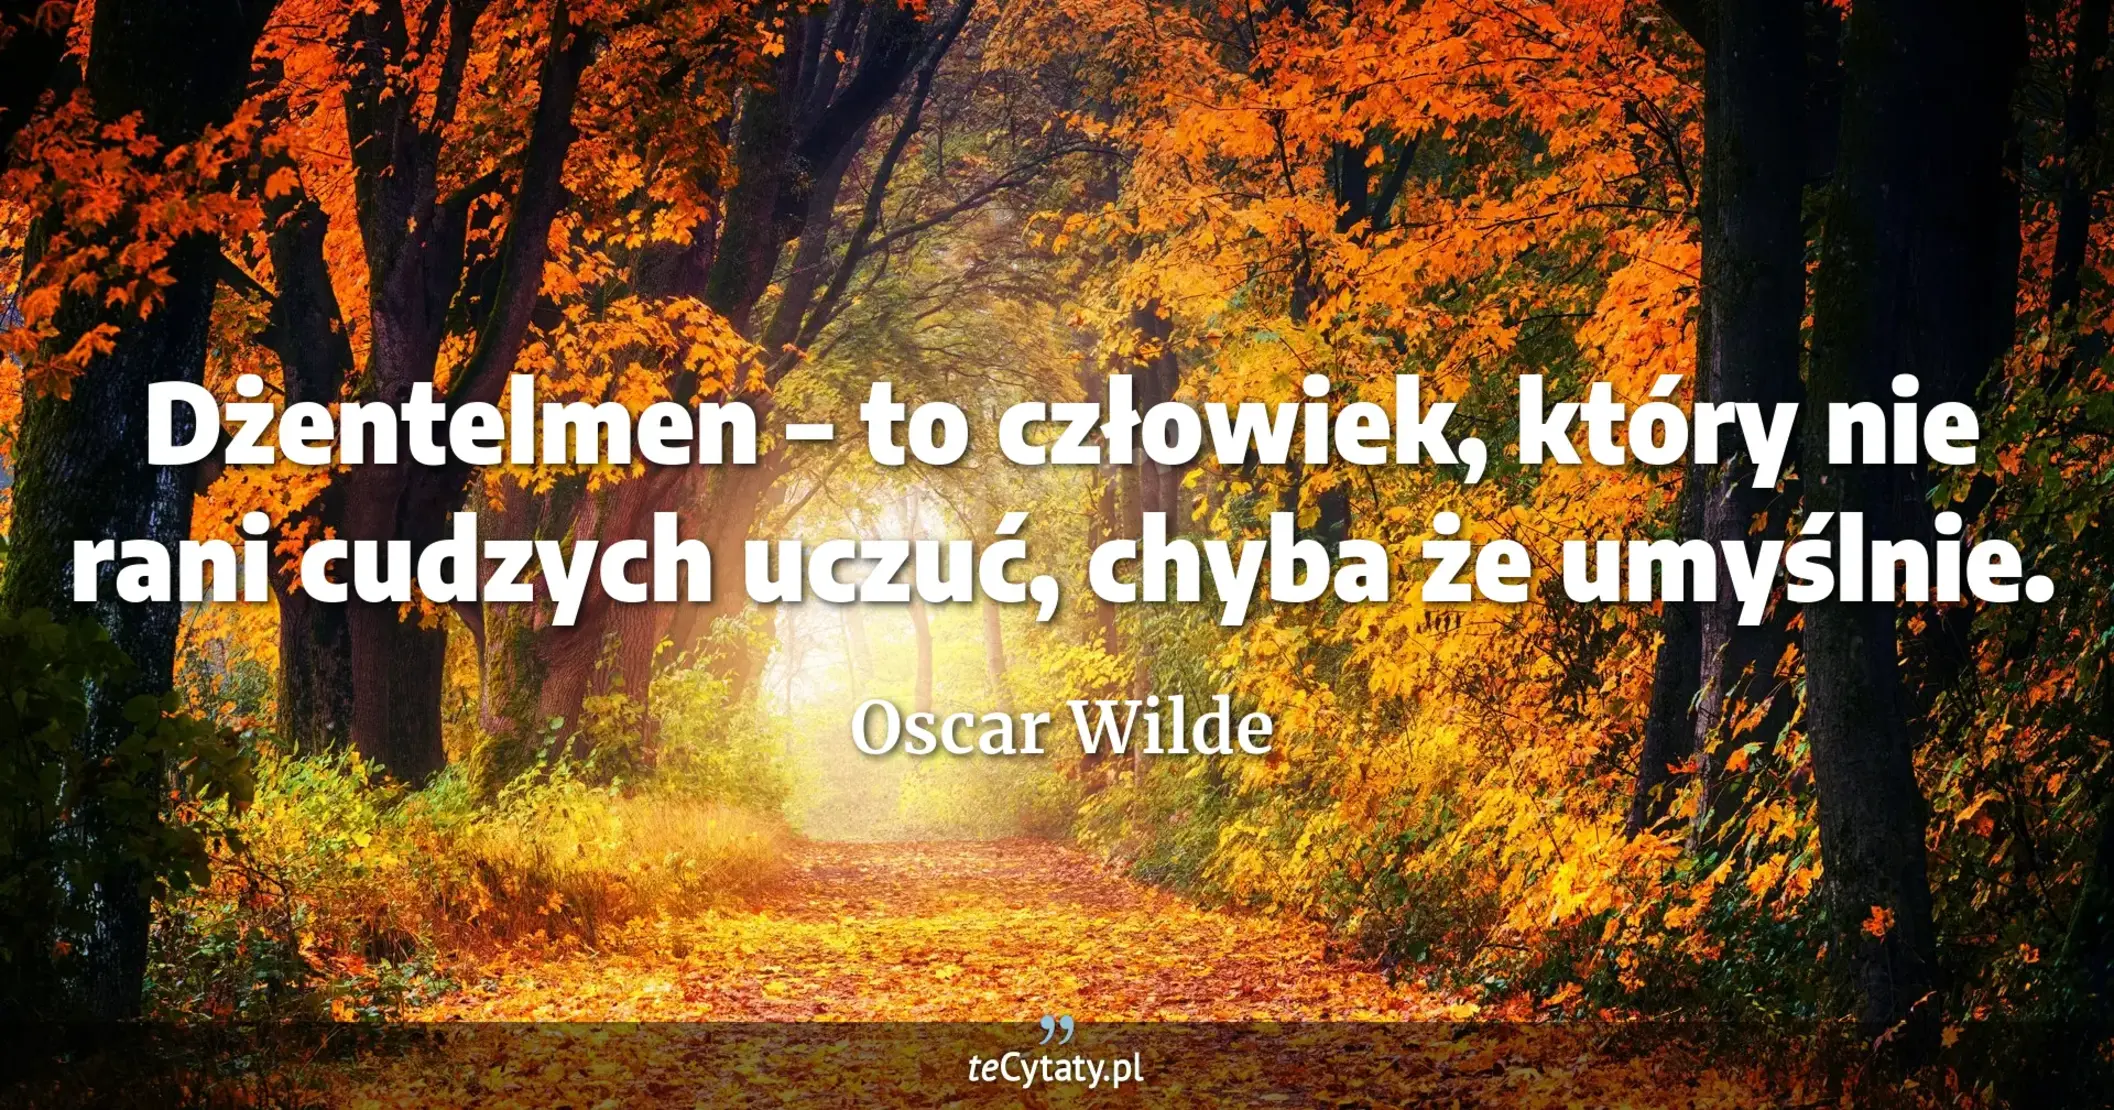 Dżentelmen – to człowiek, który nie rani cudzych uczuć, chyba że umyślnie. - Oscar Wilde